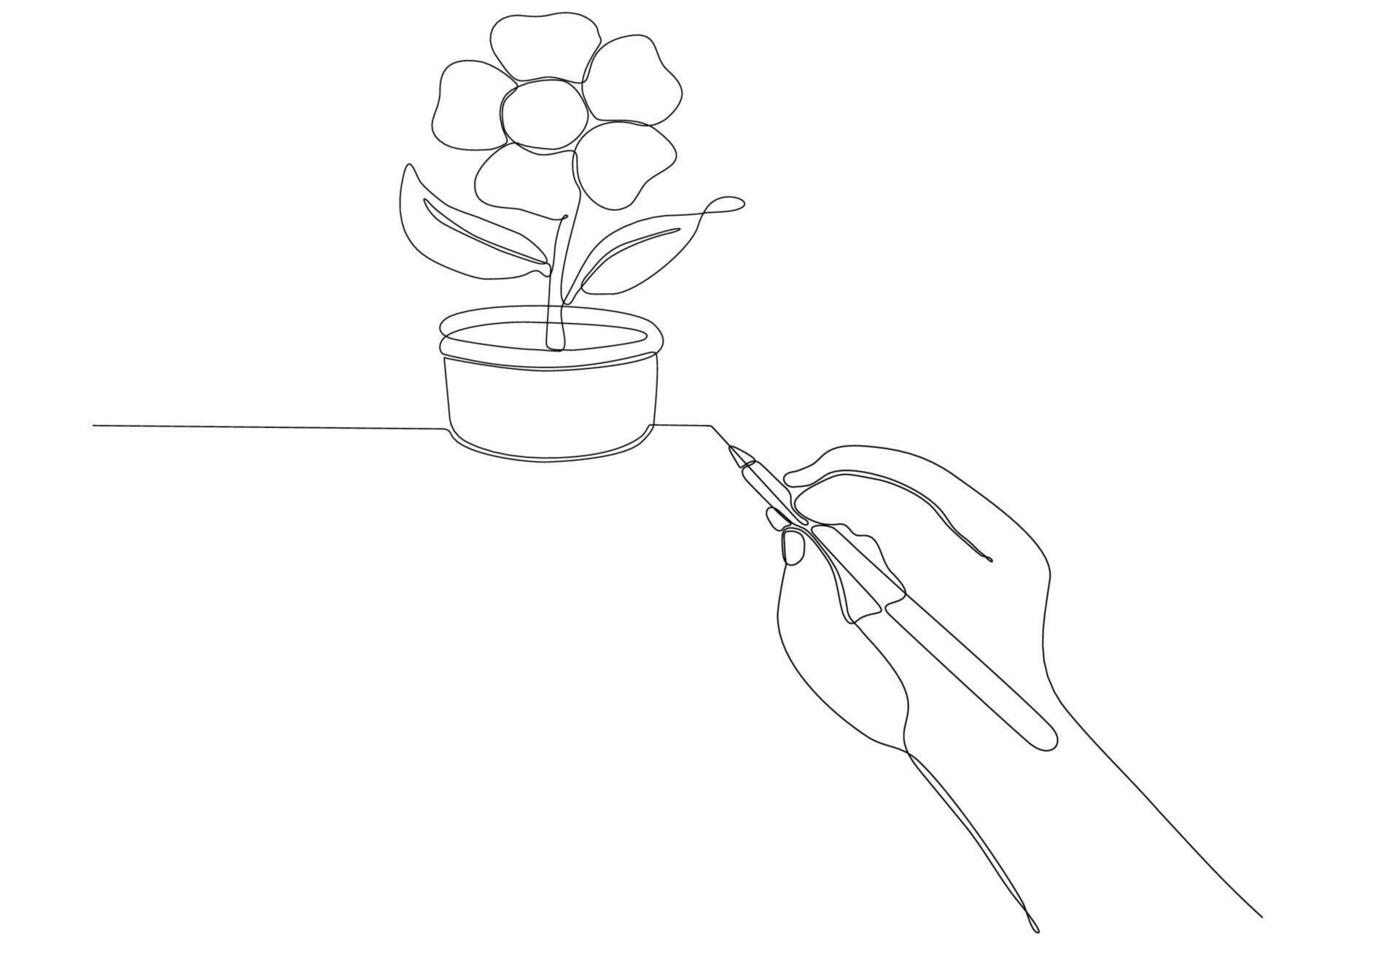 linea continua di illustrazione vettoriale di fiori di disegno a mano e penna